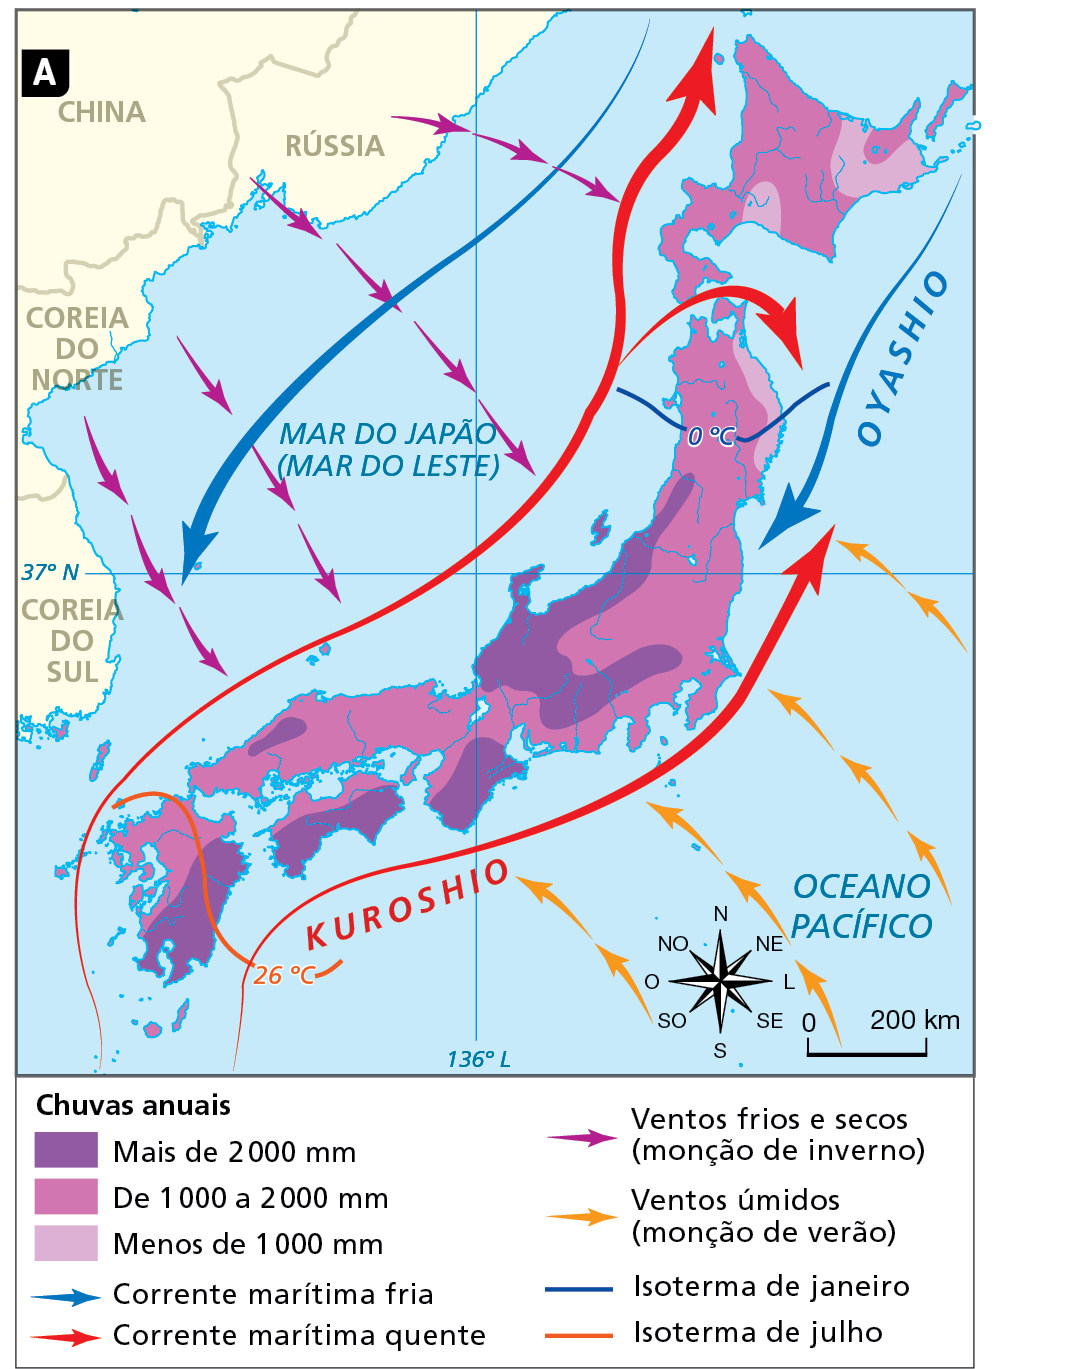 Mapa A. Japão: precipitações anuais e isotermas. Mapa do território japonês com as áreas de incidência de chuvas, especificadas por uma escala de cores. Mostra também os fluxos das correntes marítimas e as direções dos ventos, ambos representados por setas, além das isotermas, identificadas por linhas. 
Chuvas anuais:
Mais de 2.000 milímetros (em roxo): porção do interior da ilha de Honshu, e sul da ilha de Shikoku. 
De 1.000 a 2.000 milímetros (em lilás): porção leste e nordeste, e oeste da ilha de Honshu.
Menos de 1.000 milímetros (em lilás claro) parcela do território da ilha de Hokkaido e do norte da Ilha de Honshu. Correntes marítimas: 
Corrente marítima fria (seta azul): Oyashio. Flui do norte do território japonês em direção ao sul. 
Corrente marítima quente (seta vermelha): Kuroshio. Flui do sul do território japonês em direção ao norte. 
Ventos frios e secos (monção de inverno) setas roxas: partem do território da Coreia do Norte, China e Rússia em direção ao Japão, cruzando o Mar do Japão (Mar do Leste). 
Ventos úmidos (monções de verão) setas laranjas: fluem a partir do Oceano  Pacífico, na direção sudeste-noroeste em direção ao Japão, atravessando parte do Oceano Pacífico. 
Isoterma de janeiro (linha azul), marcando 0 grau Célsius: norte da Ilha de Honshu. 
Isoterma de julho (linha vermelha), marcando 26 graus Célsius: sul do território japonês, atravessando a faixa central da Ilha Kyushu. 
Abaixo, rosa dos ventos e escala de 0 a 200 quilômetros.